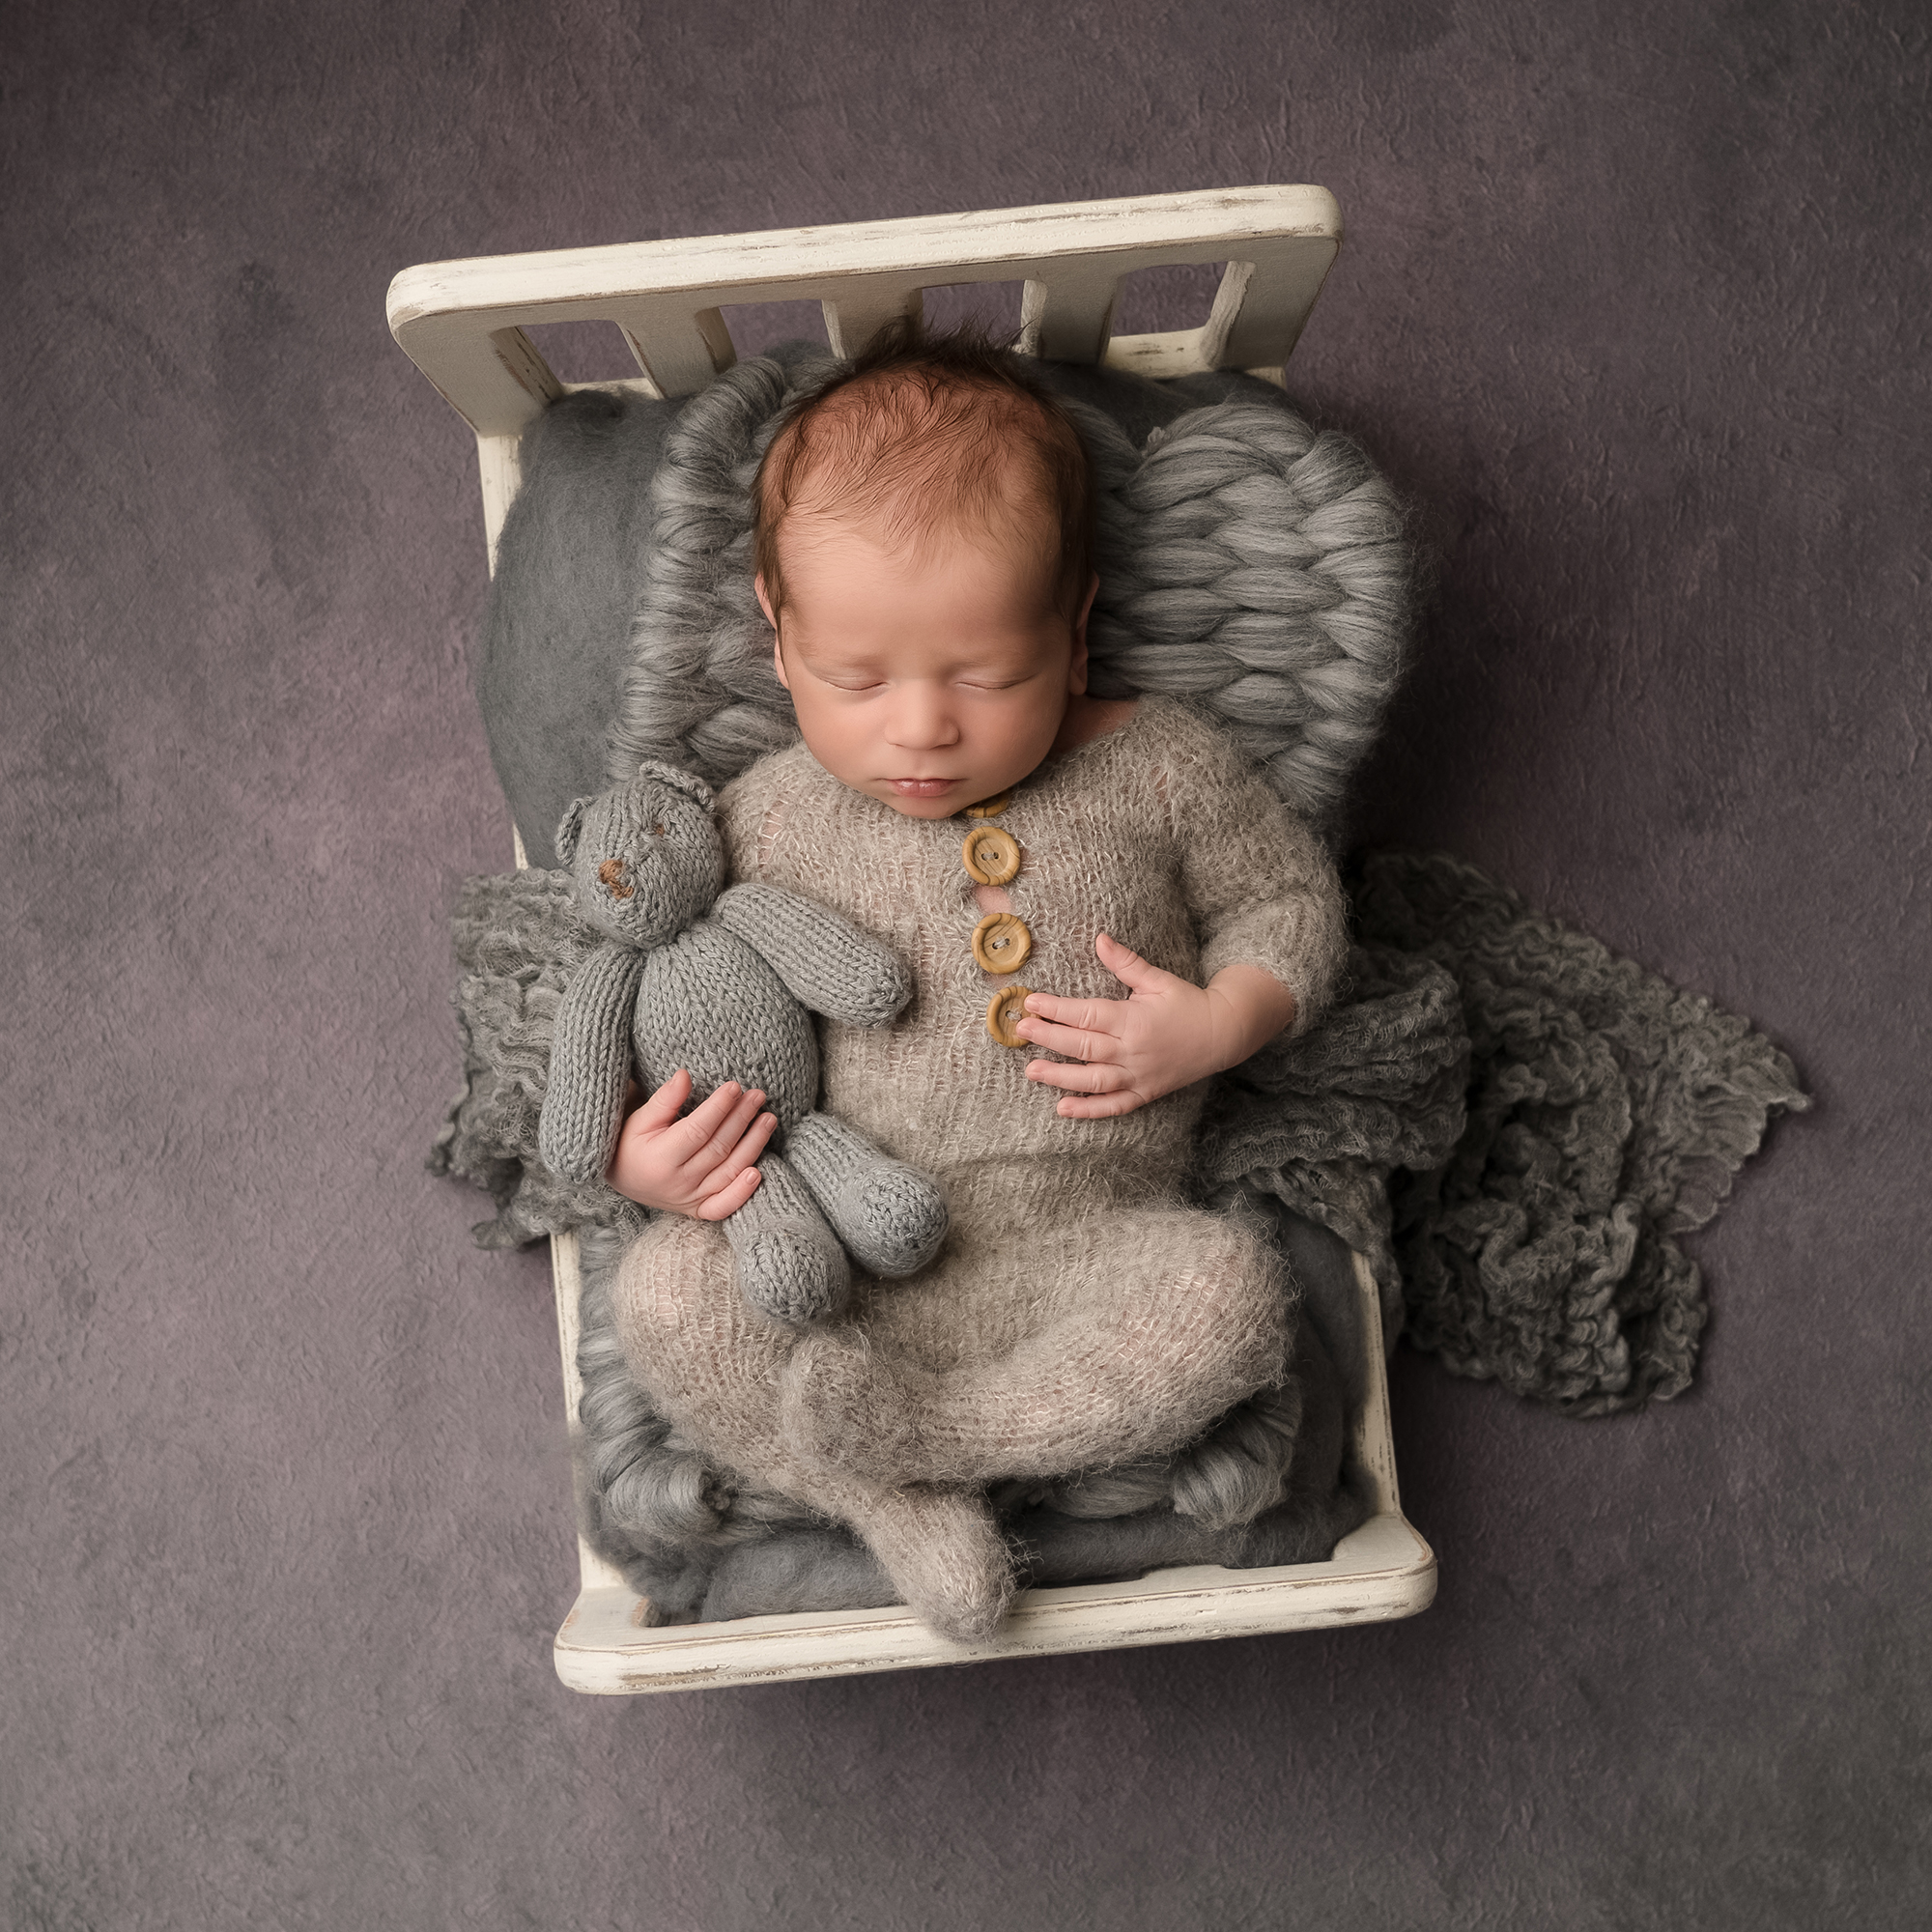 Newborn Photography captured by Hayley Scott